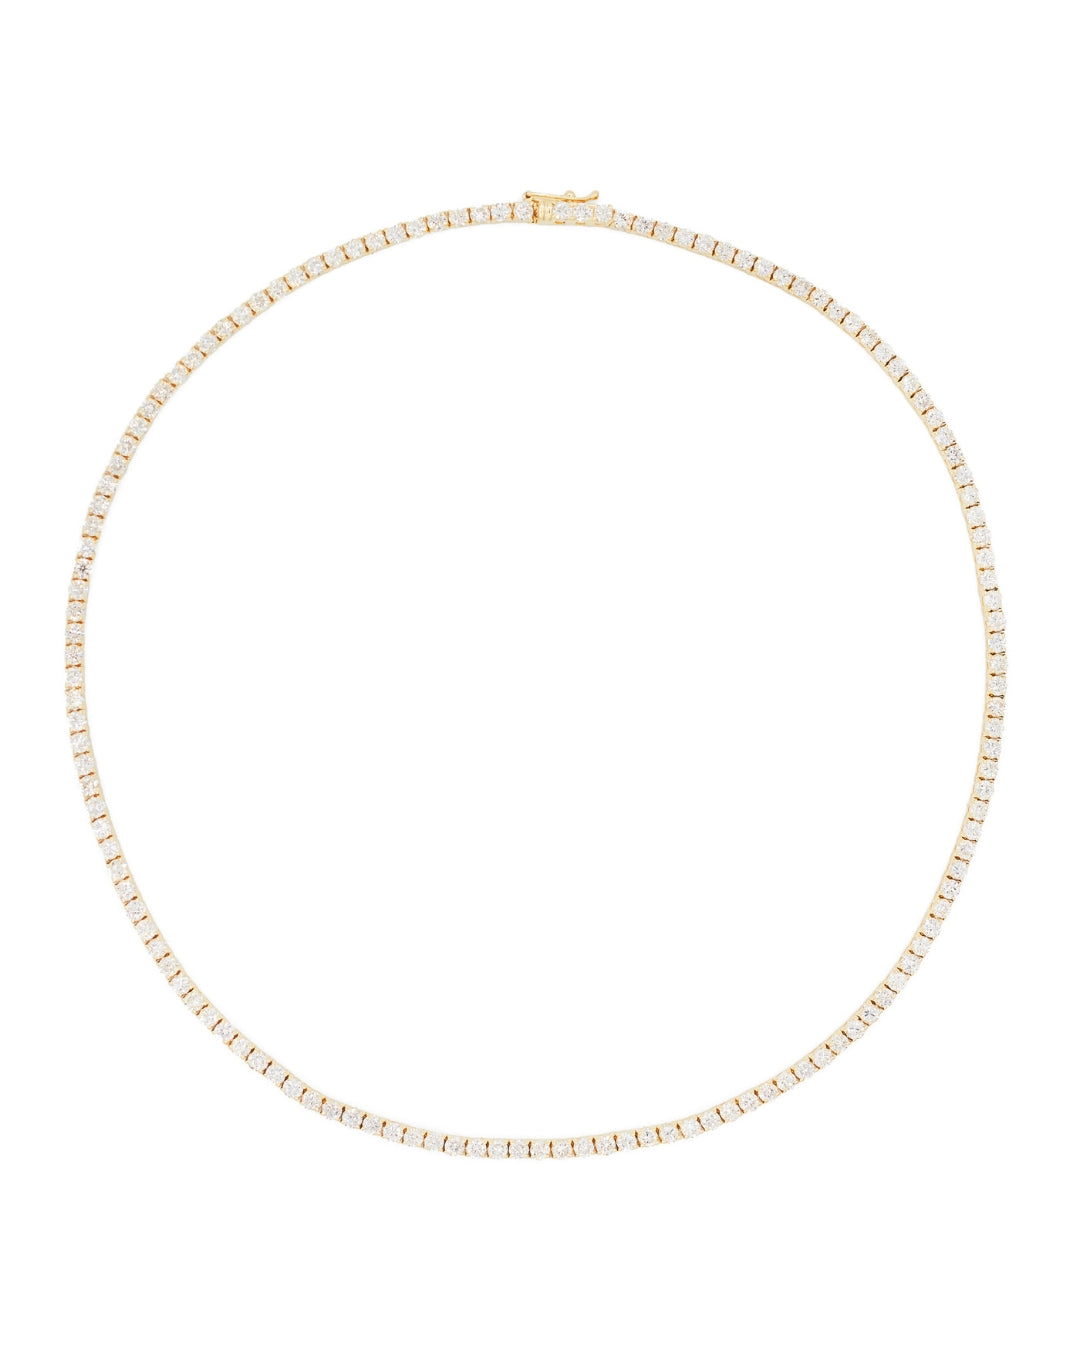 AURA White Diamonds Tennis Necklace